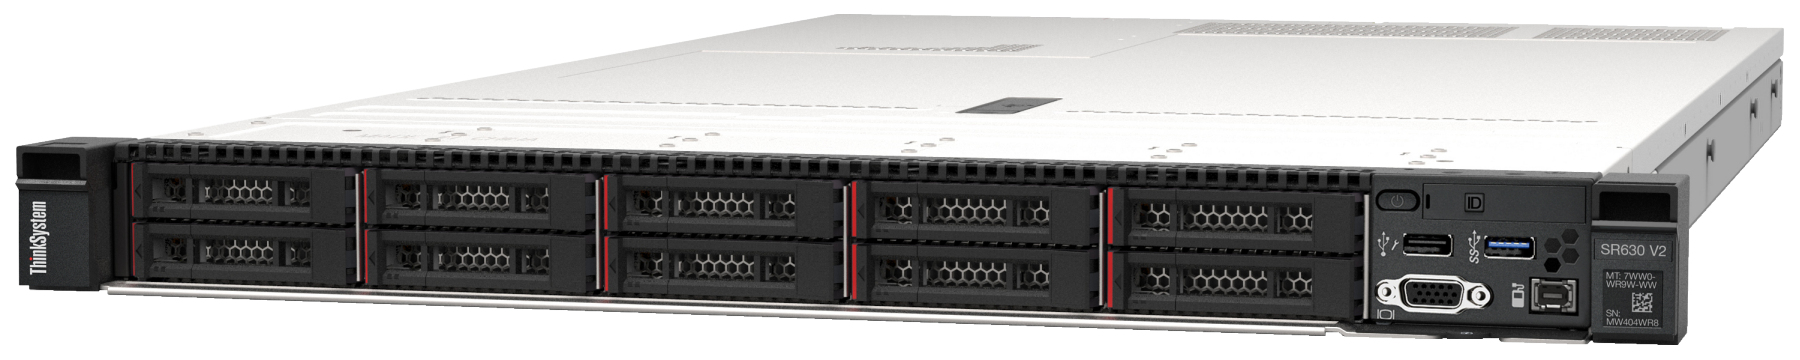 Сервер Lenovo ThinkSystem SR630 V2 (7Z71A056EA). Фиксированная комплектация сервера